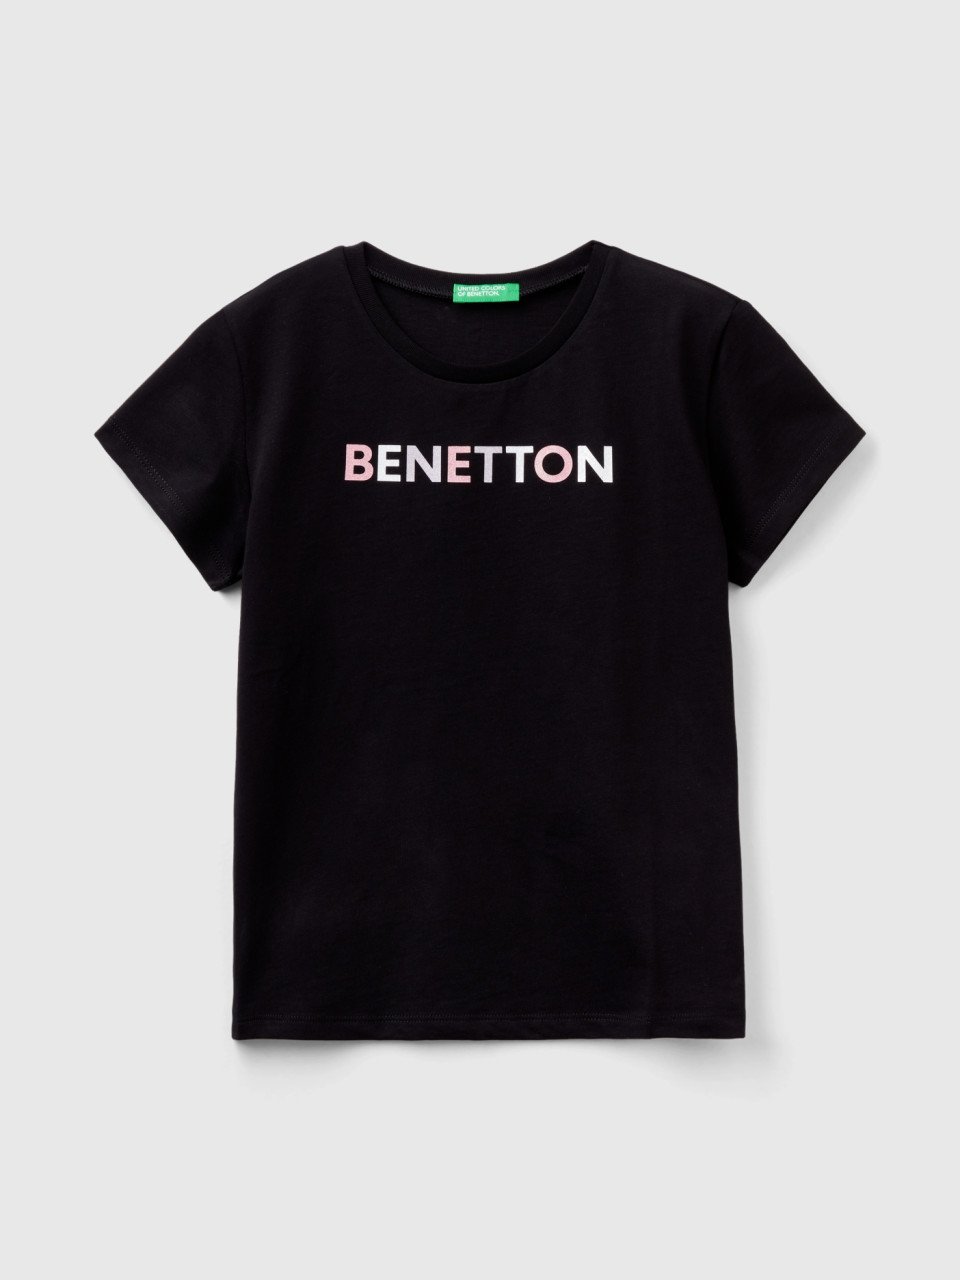 Benetton, Camiseta Con Logotipo De Glitter De Algodón Orgánico, Negro, Niños